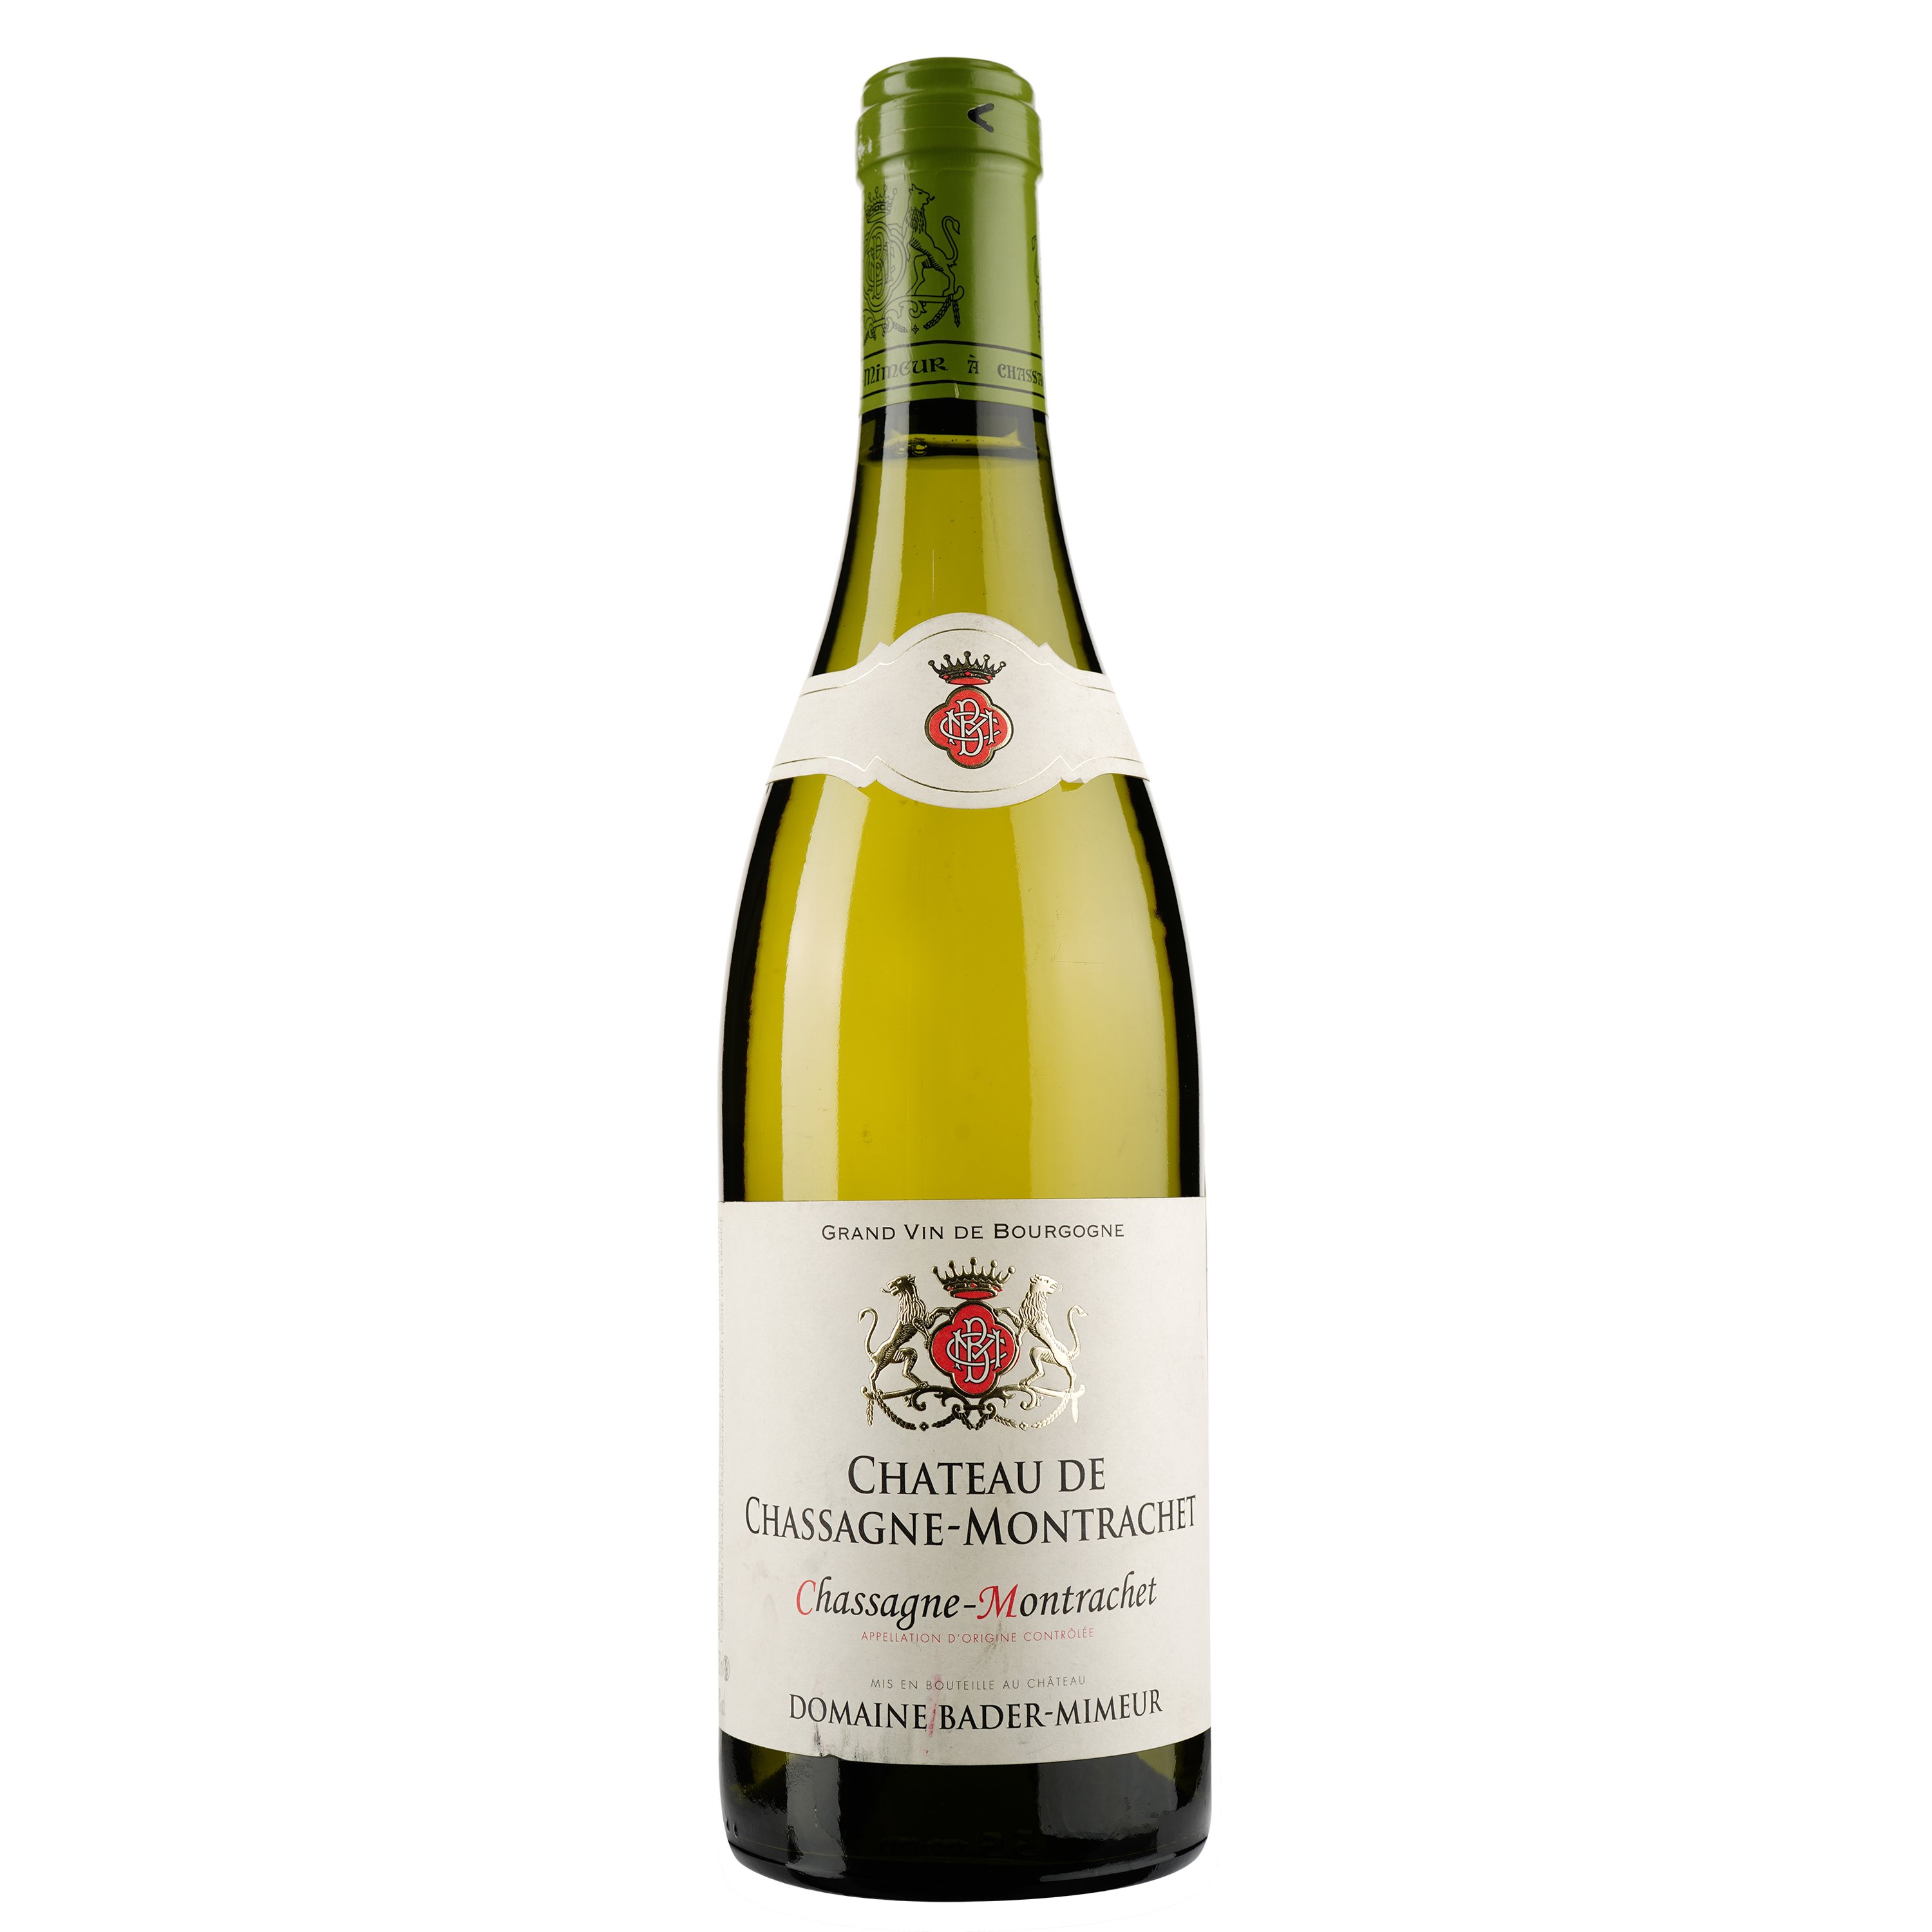 Вино Domaine Bader-Mimeur Chassagne-Montrachet Chateau de Chassagne-Montrachet Blanc 2017 АОС/AOP, 13%, 0,75 л (763084) - фото 1